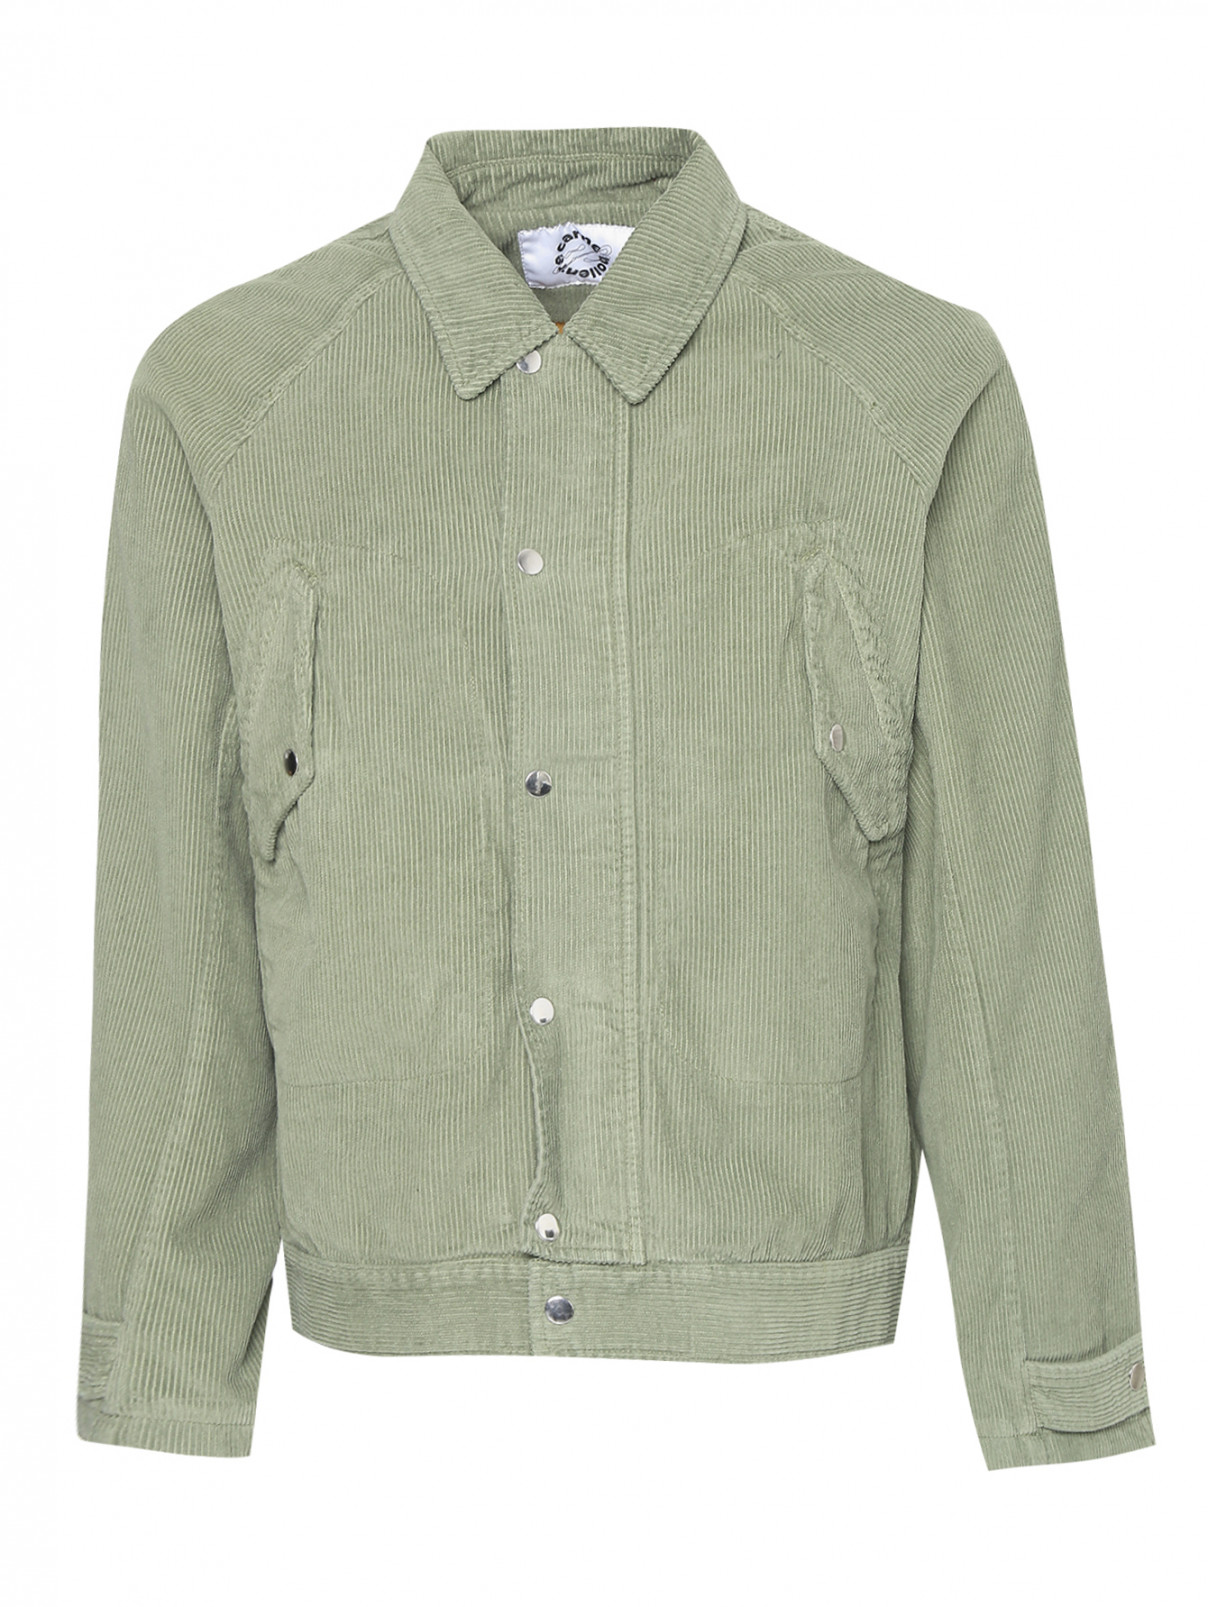 Куртка вельветовая на кнопках Carne Bollente  –  Общий вид  – Цвет:  Зеленый